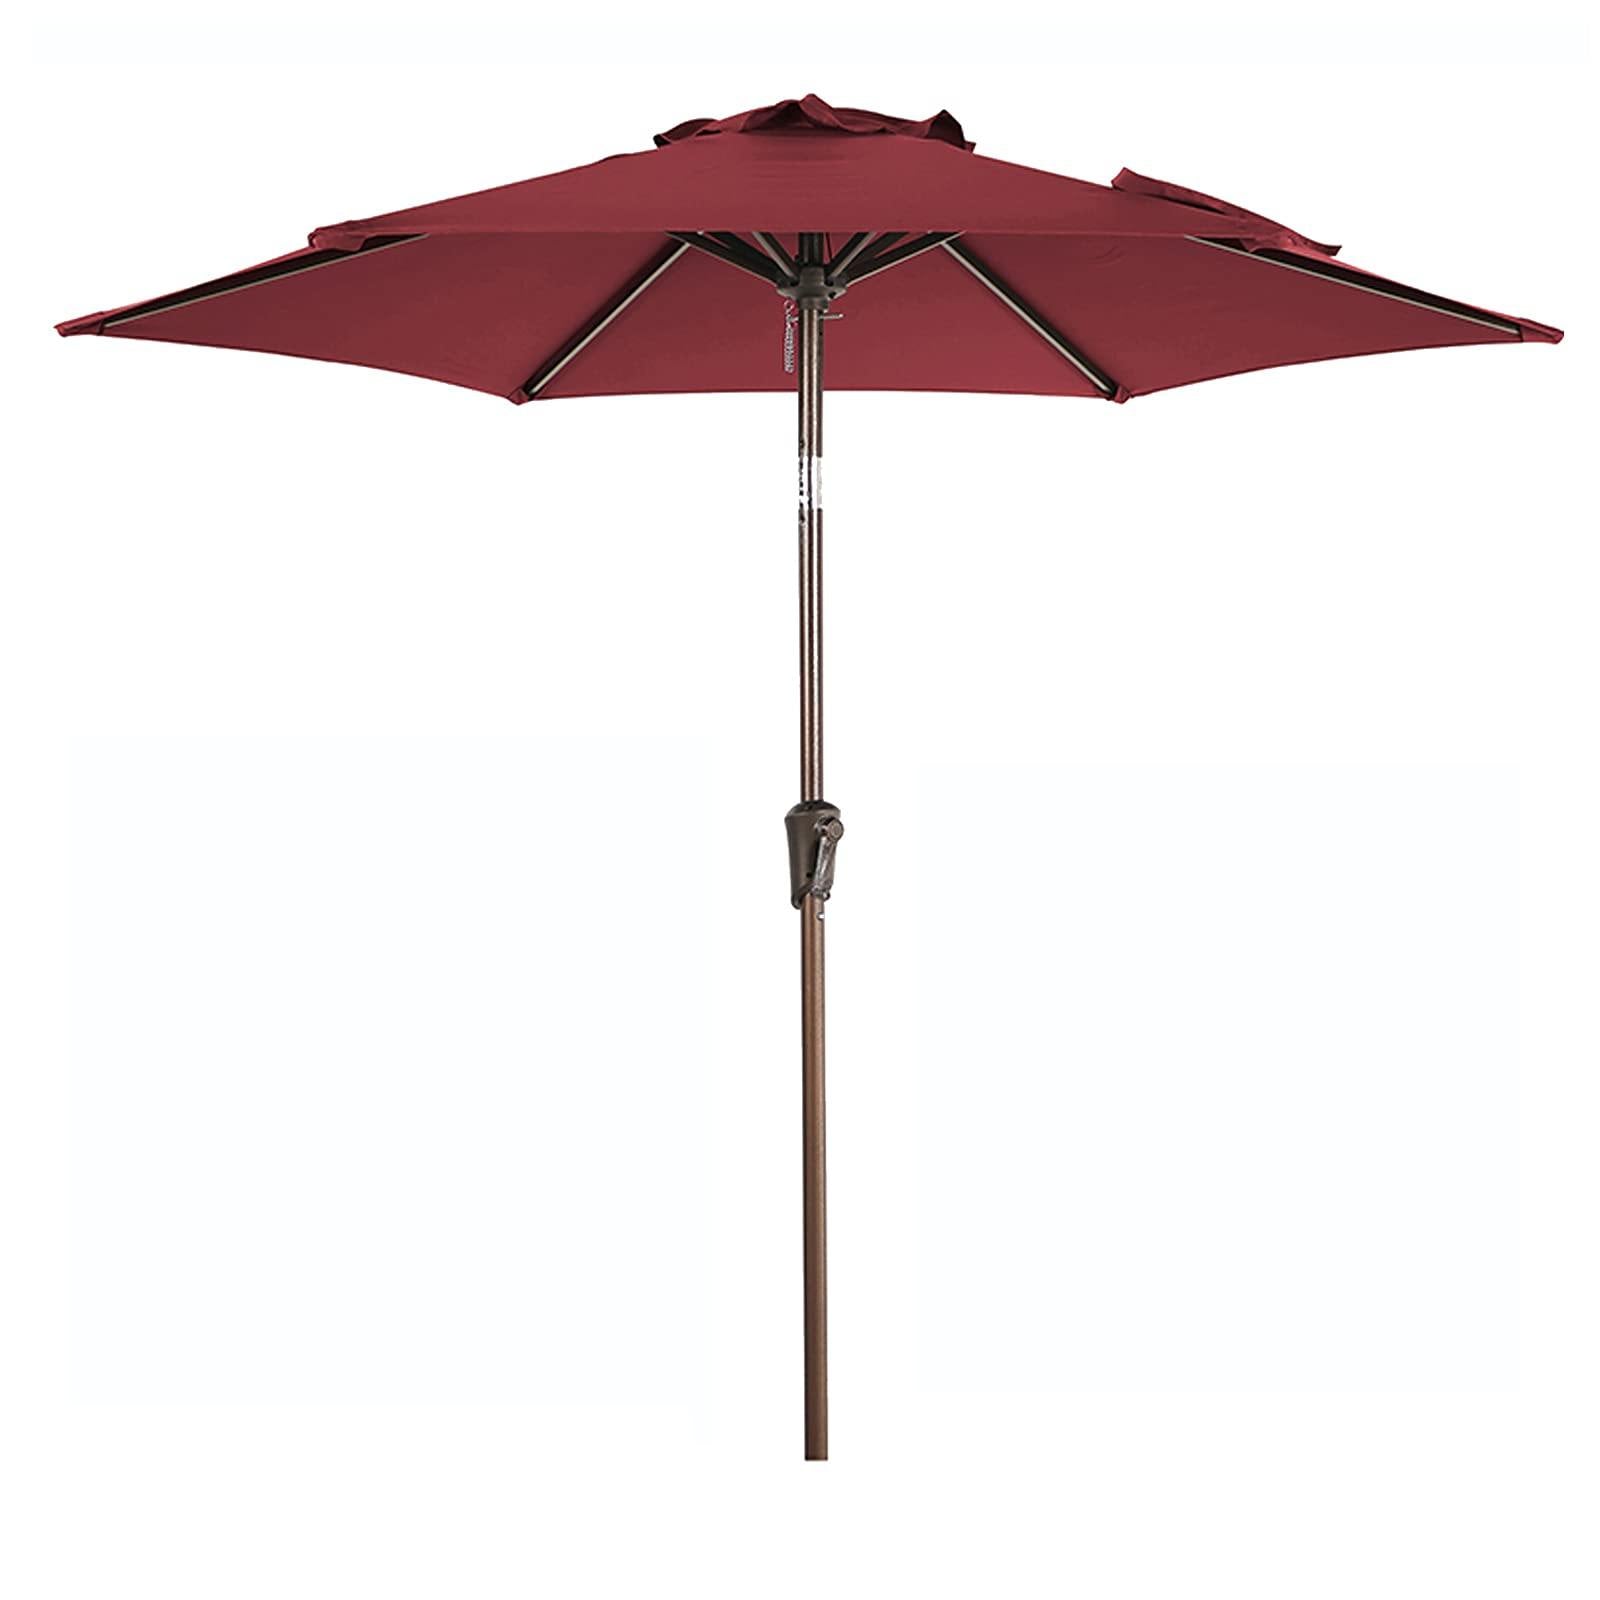 Breez 7.5' Patio Umbrella, Table Market Umbrella, Dark Red - OrangeCasual